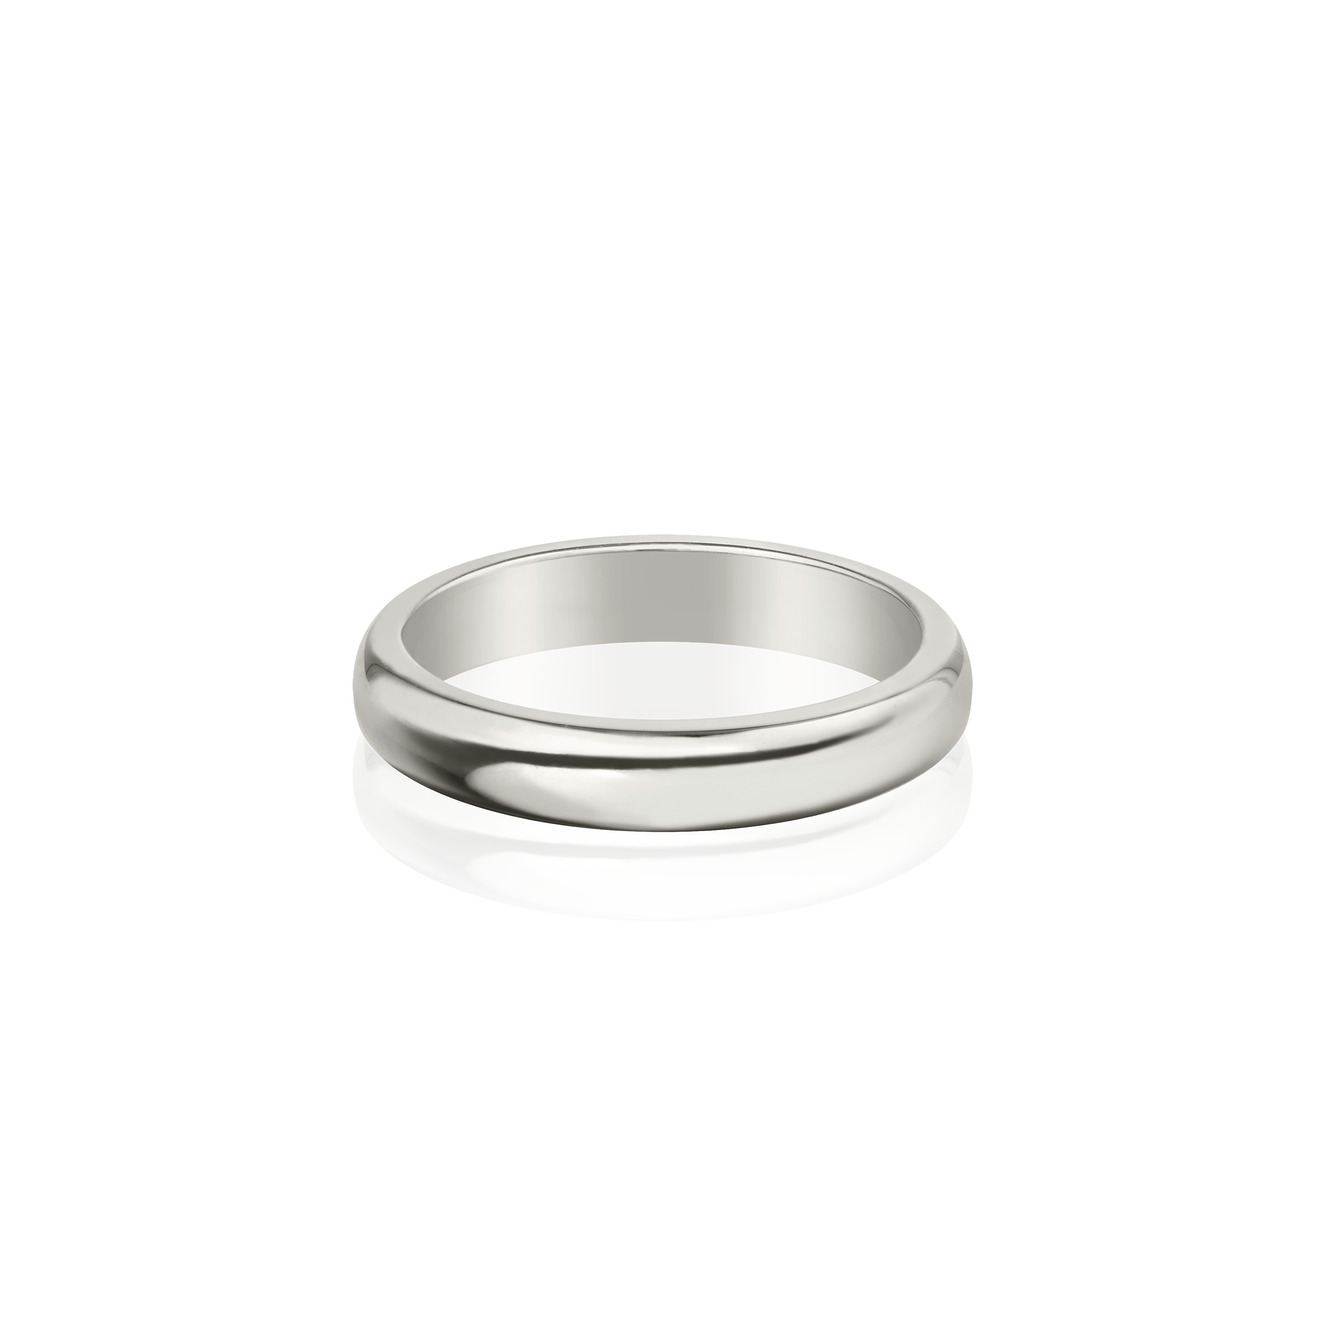 Vertigo Jewellery Lab Фаланговое кольцо из серебра ESSENTIALS vertigo jewellery lab фаланговое кольцо из серебра essentials покрытое розовым золотом